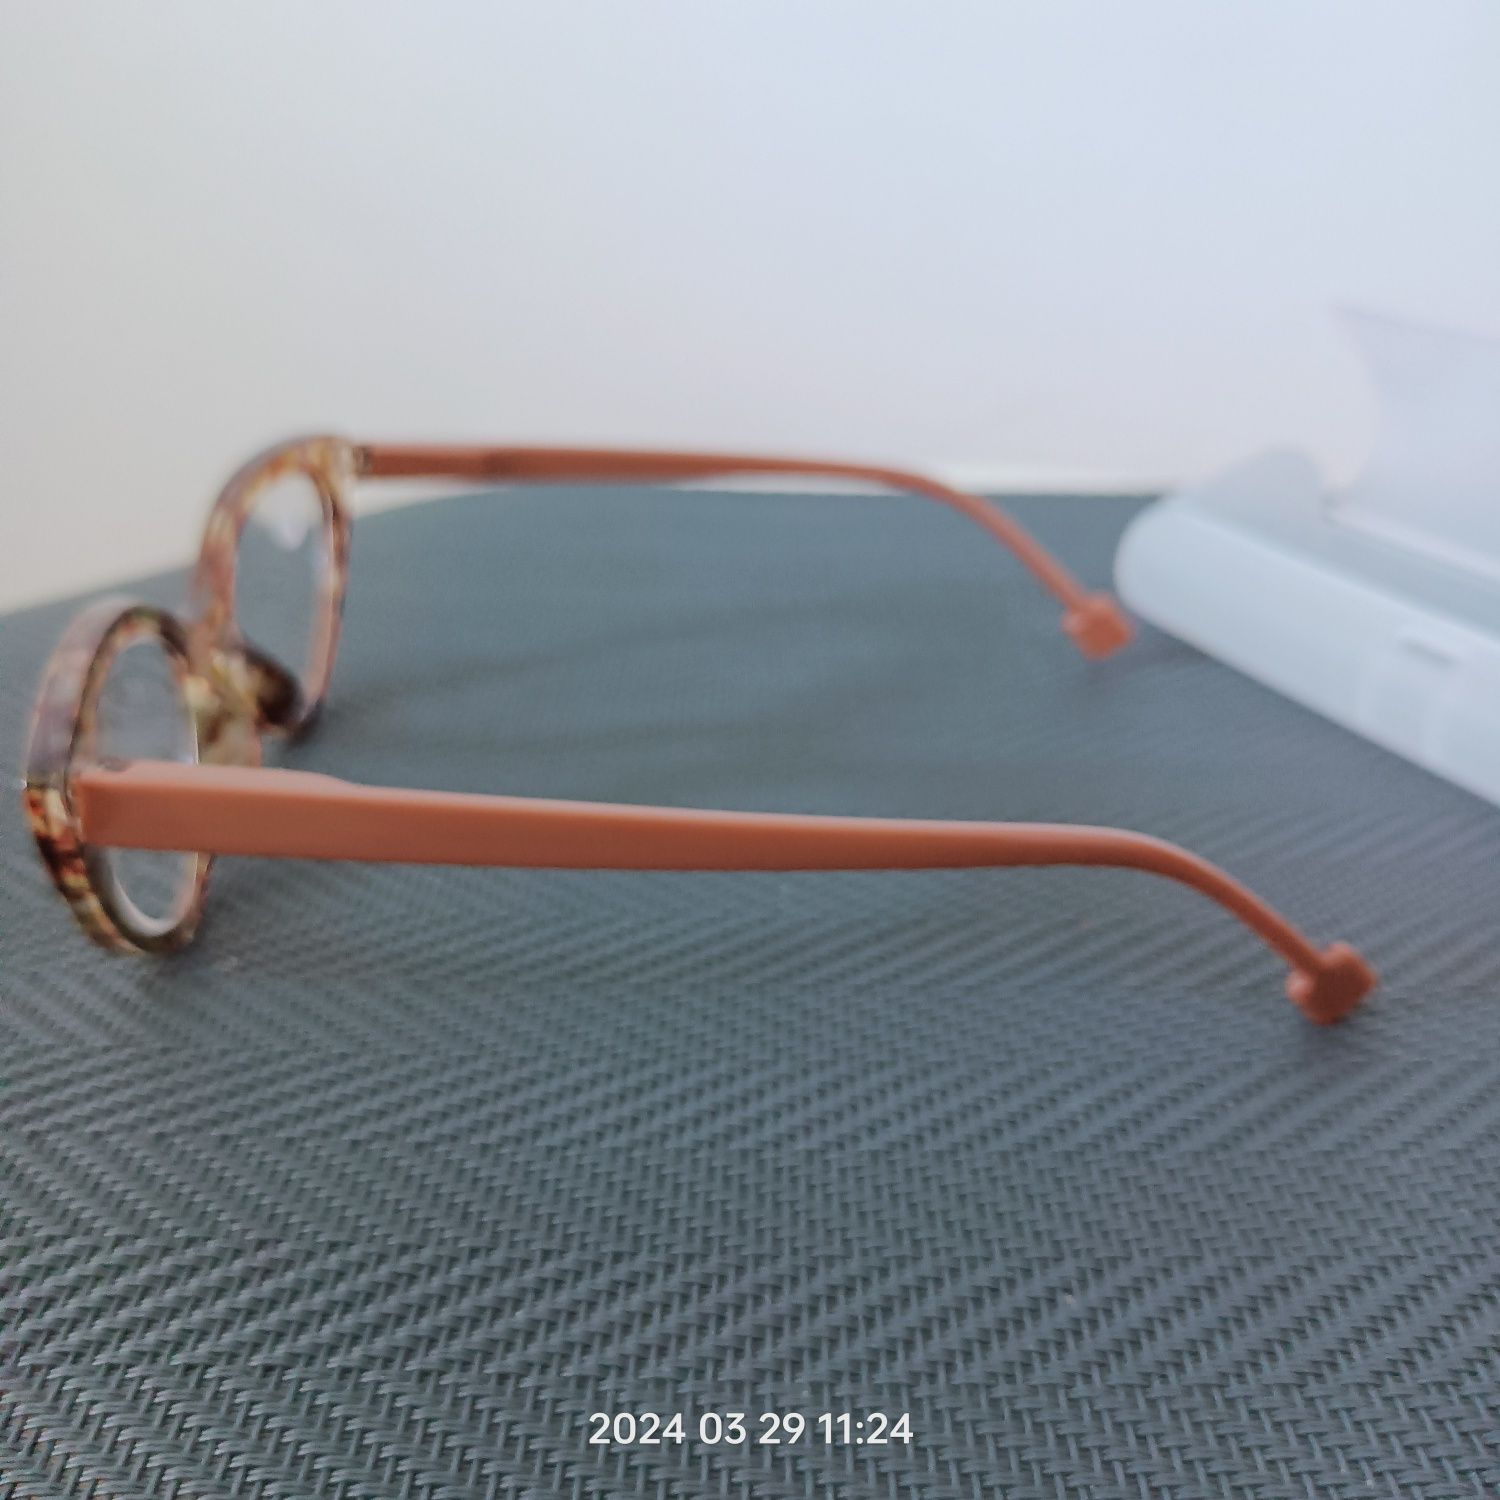 Okulary do czytania plus 1, 5 dioptrii z futerałem